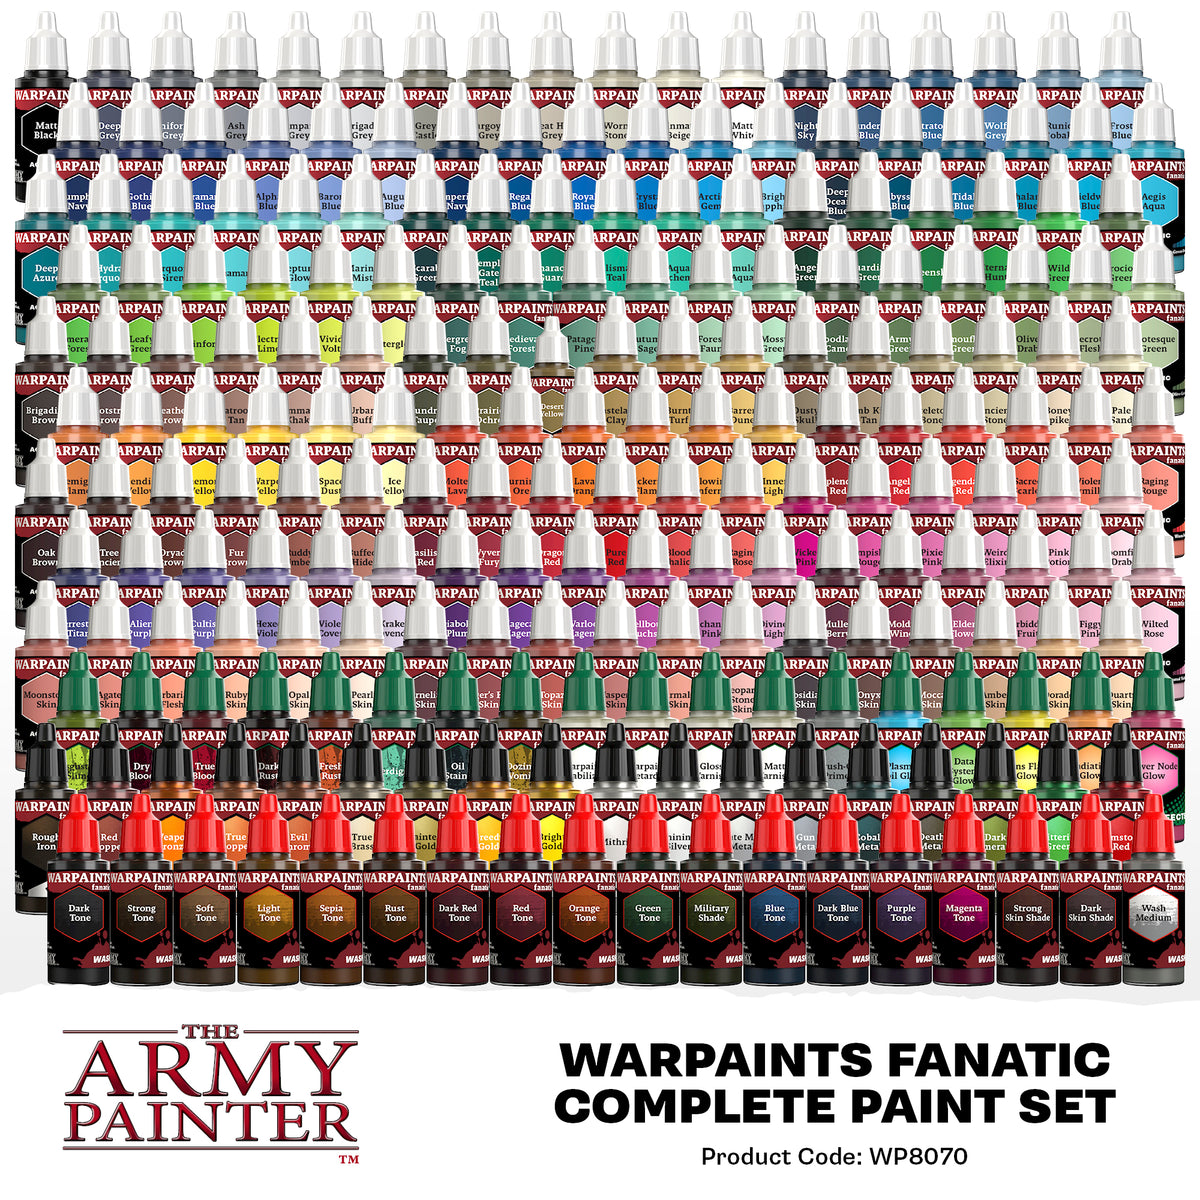 PREORDER - The Army Painter Warpaints Fanatic: Mega Paint Set (WP8067) –  Gnomish Bazaar